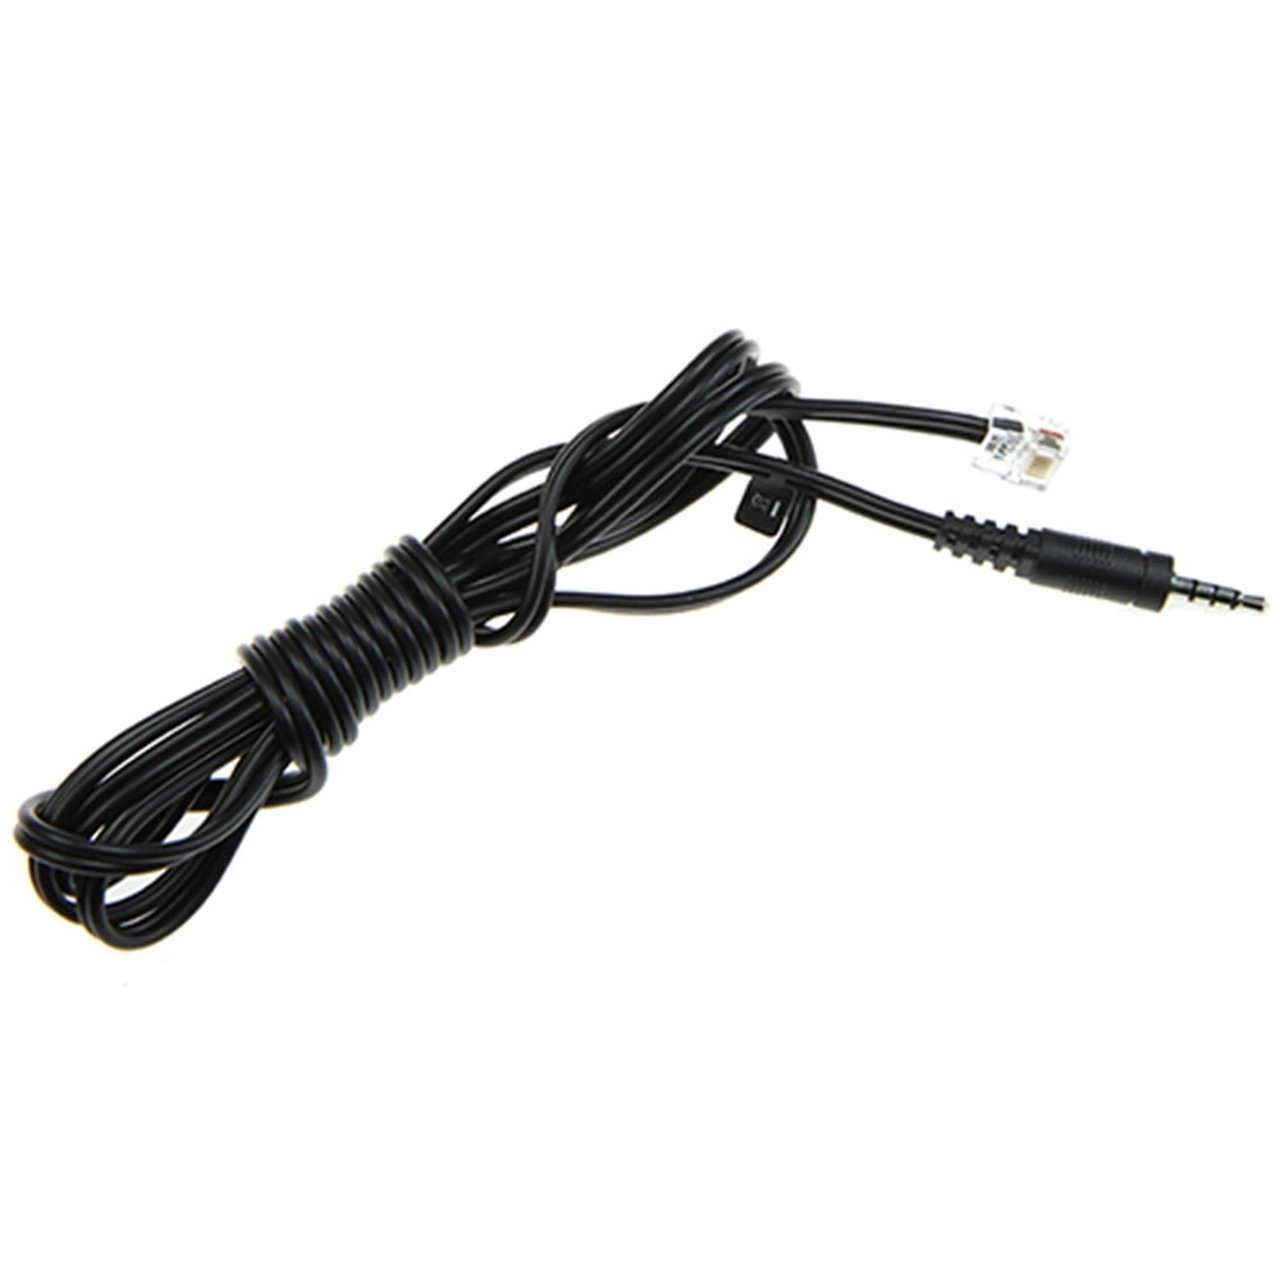 Konftel Mobile Cable for Smartphones OMTP Standard - 900103390 - Headset Advisor